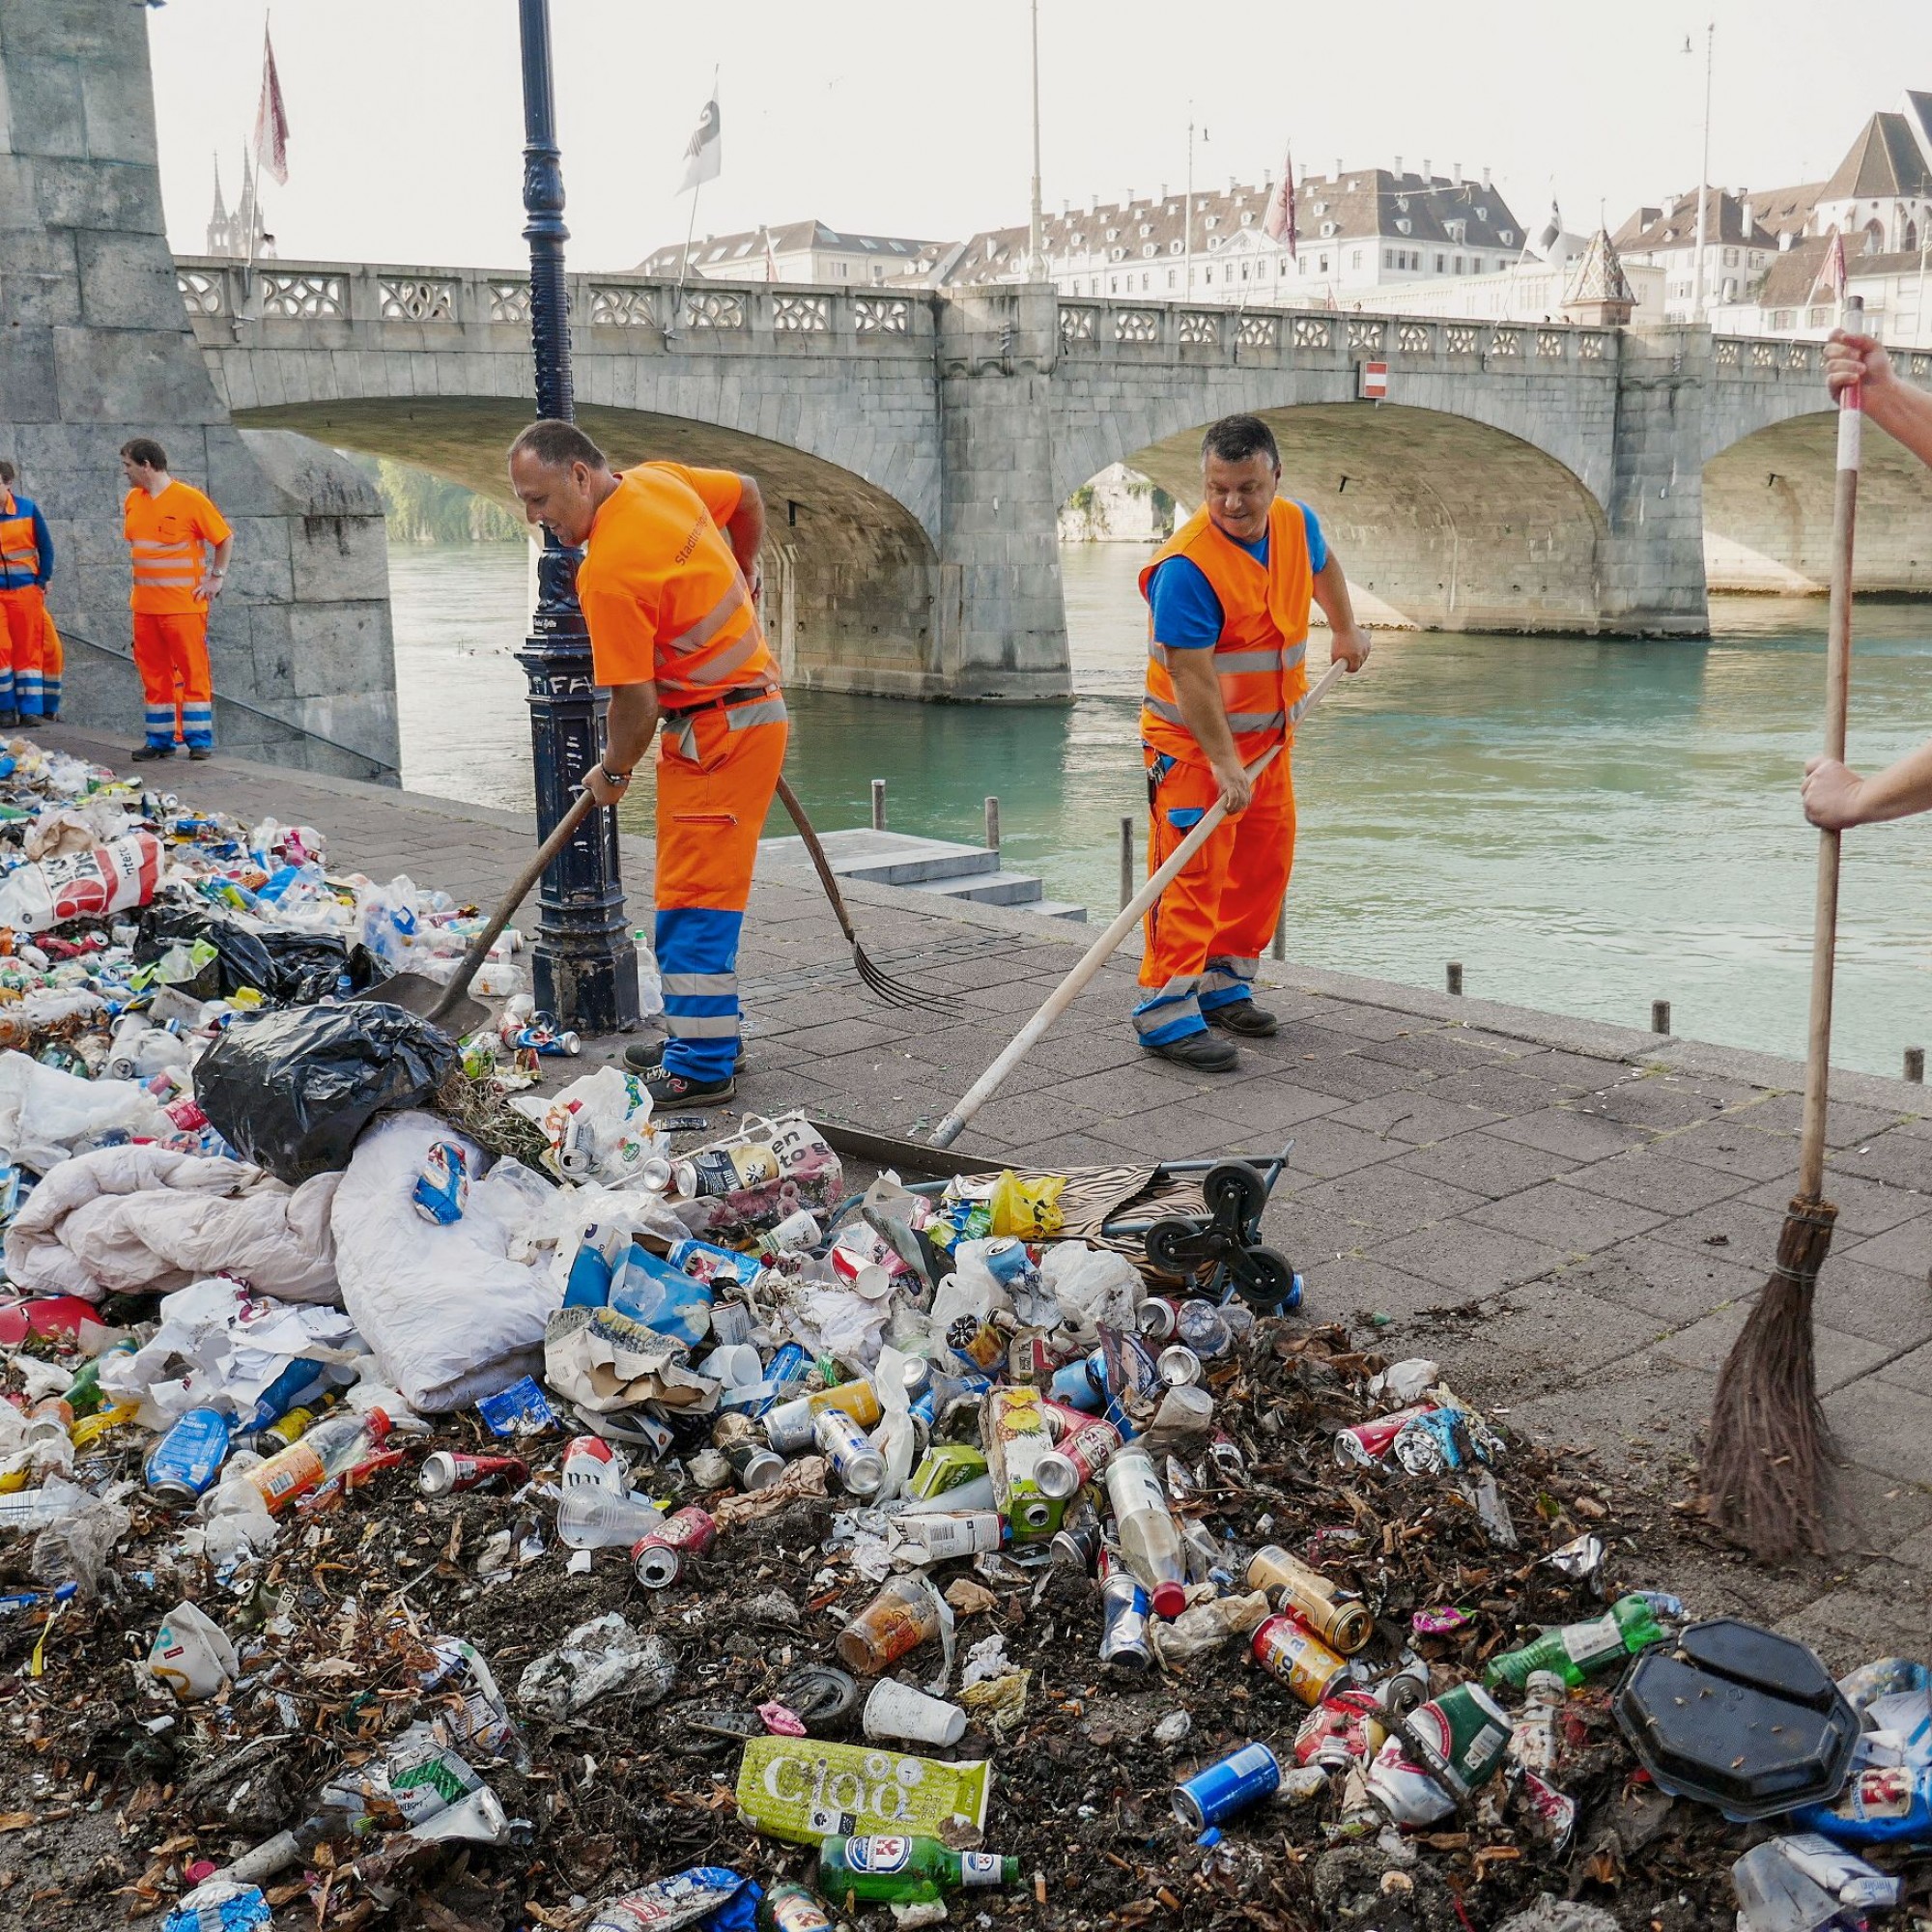 Eine Woche lang wurde der achtlos liegen gelassene Müll entlang des Rheinbords gesammelt und dann an der mittleren Brücke wieder ausgebreitet.